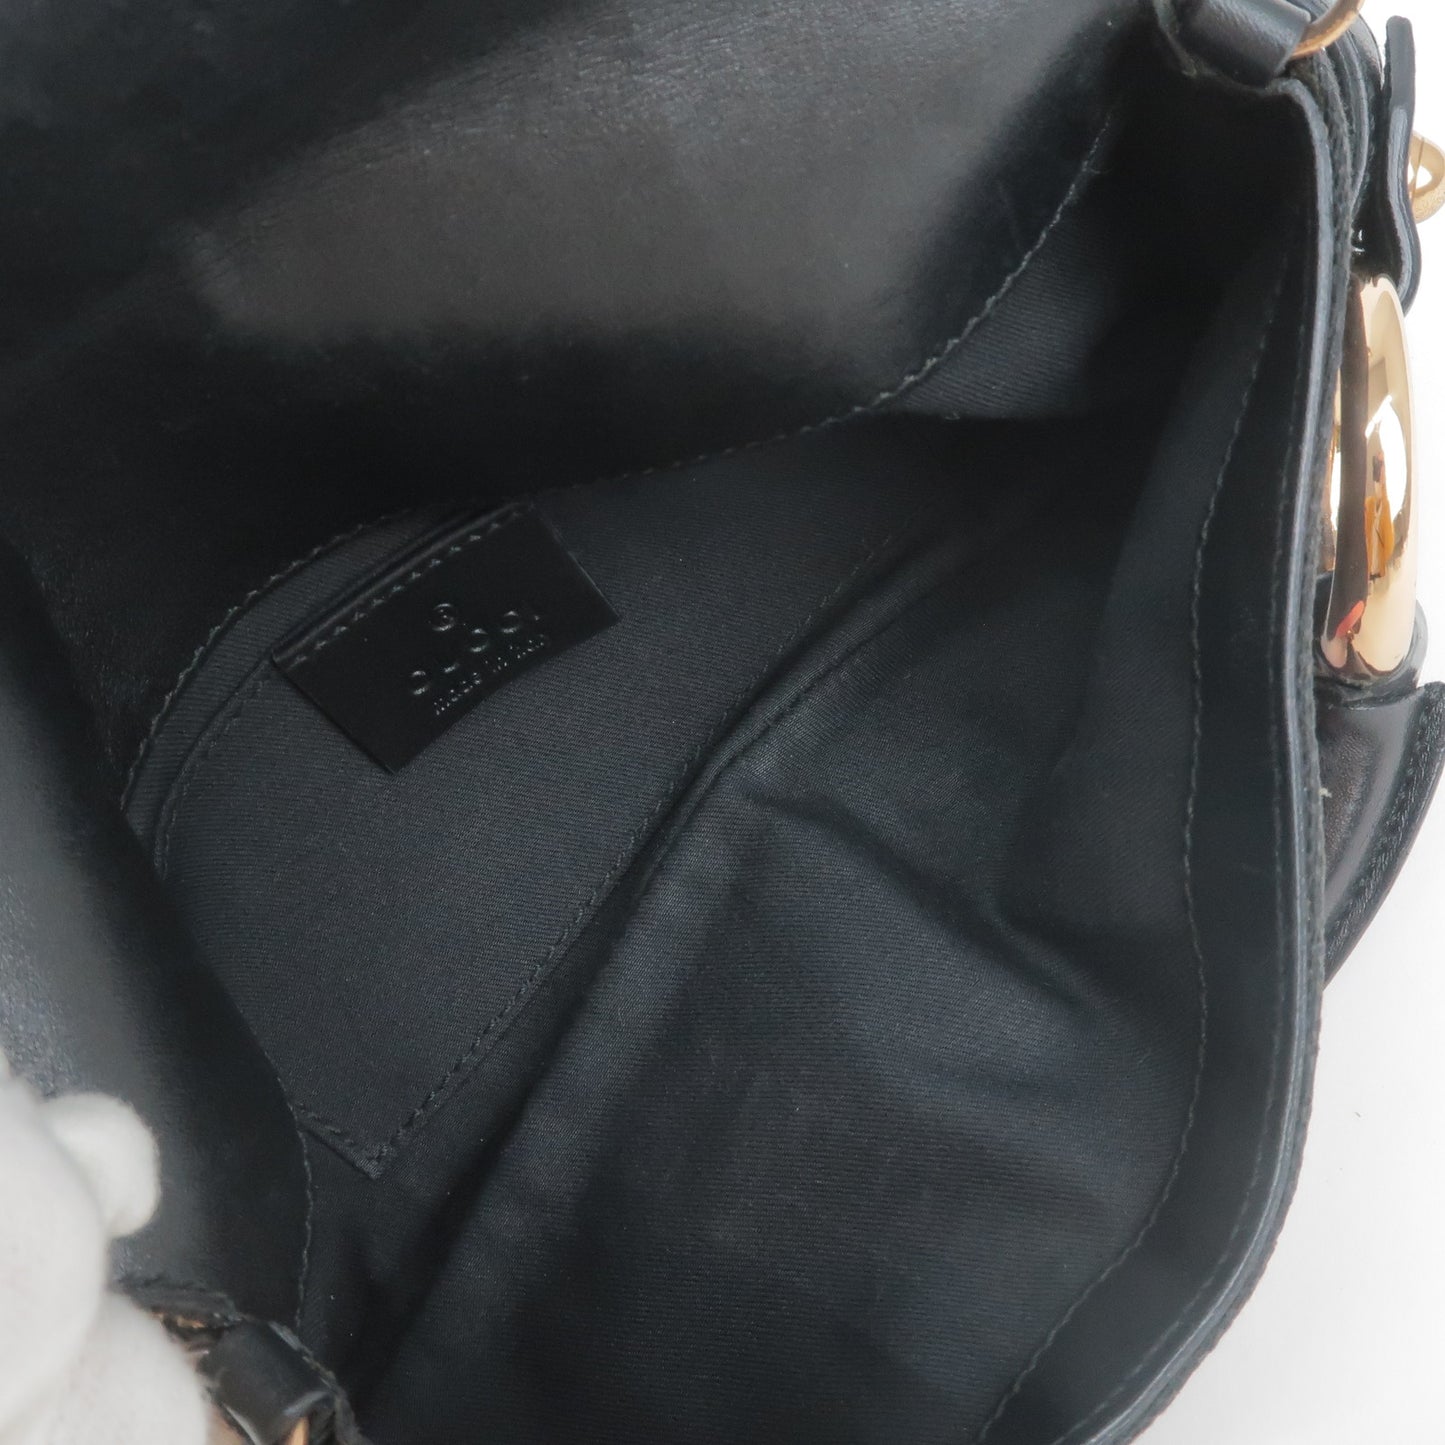 GUCCI Horsebit GG Canvas Leather Shoulder Bag Black Pink 129497